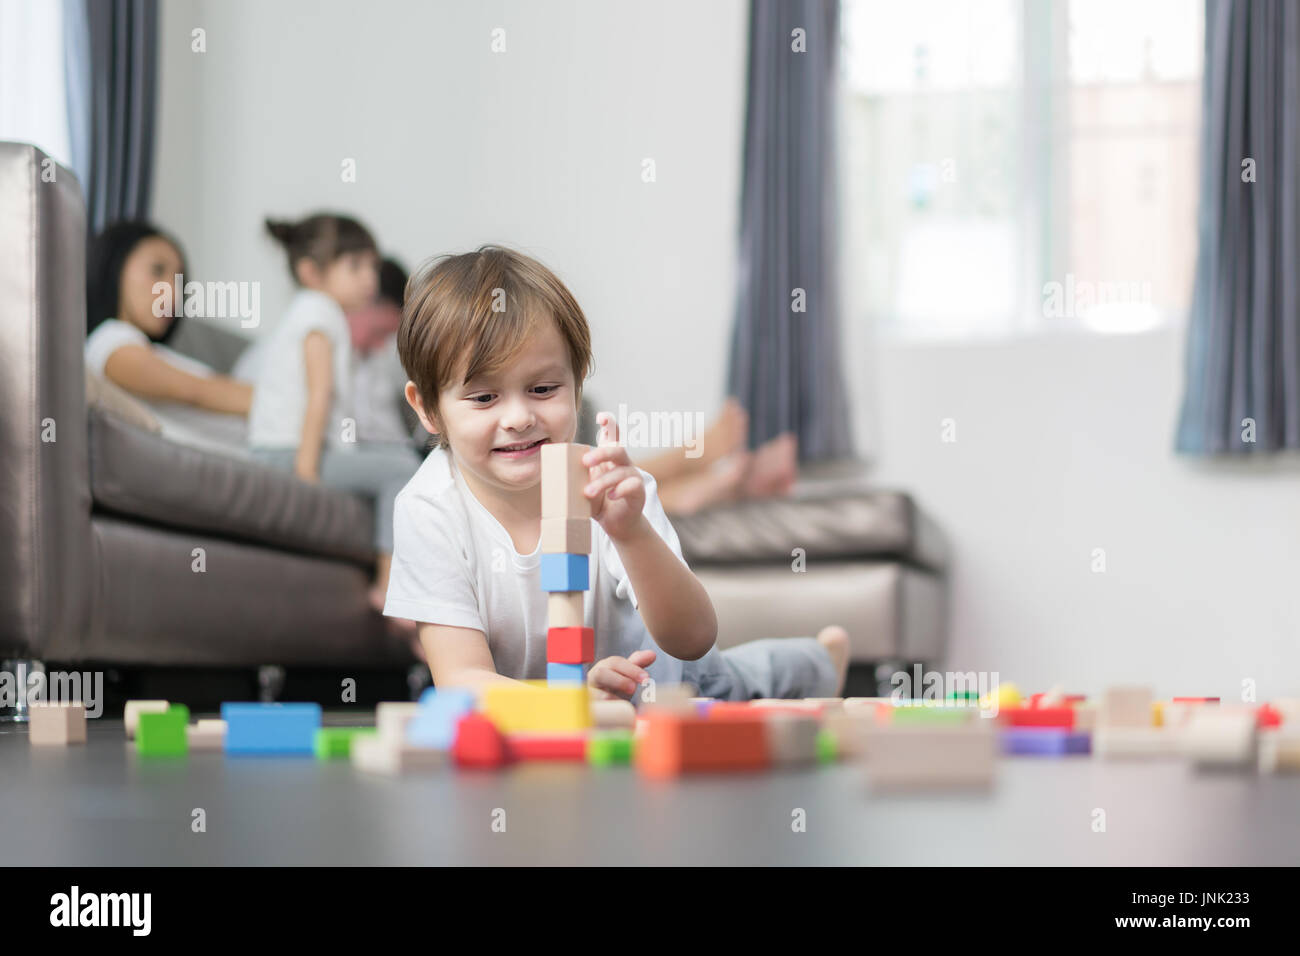 Asiatische junge Holz Spielzeug im Wohnzimmer mit Vater, Mutter und Tochter im Hintergrund zu spielen. Glückliche Familie. Stockfoto